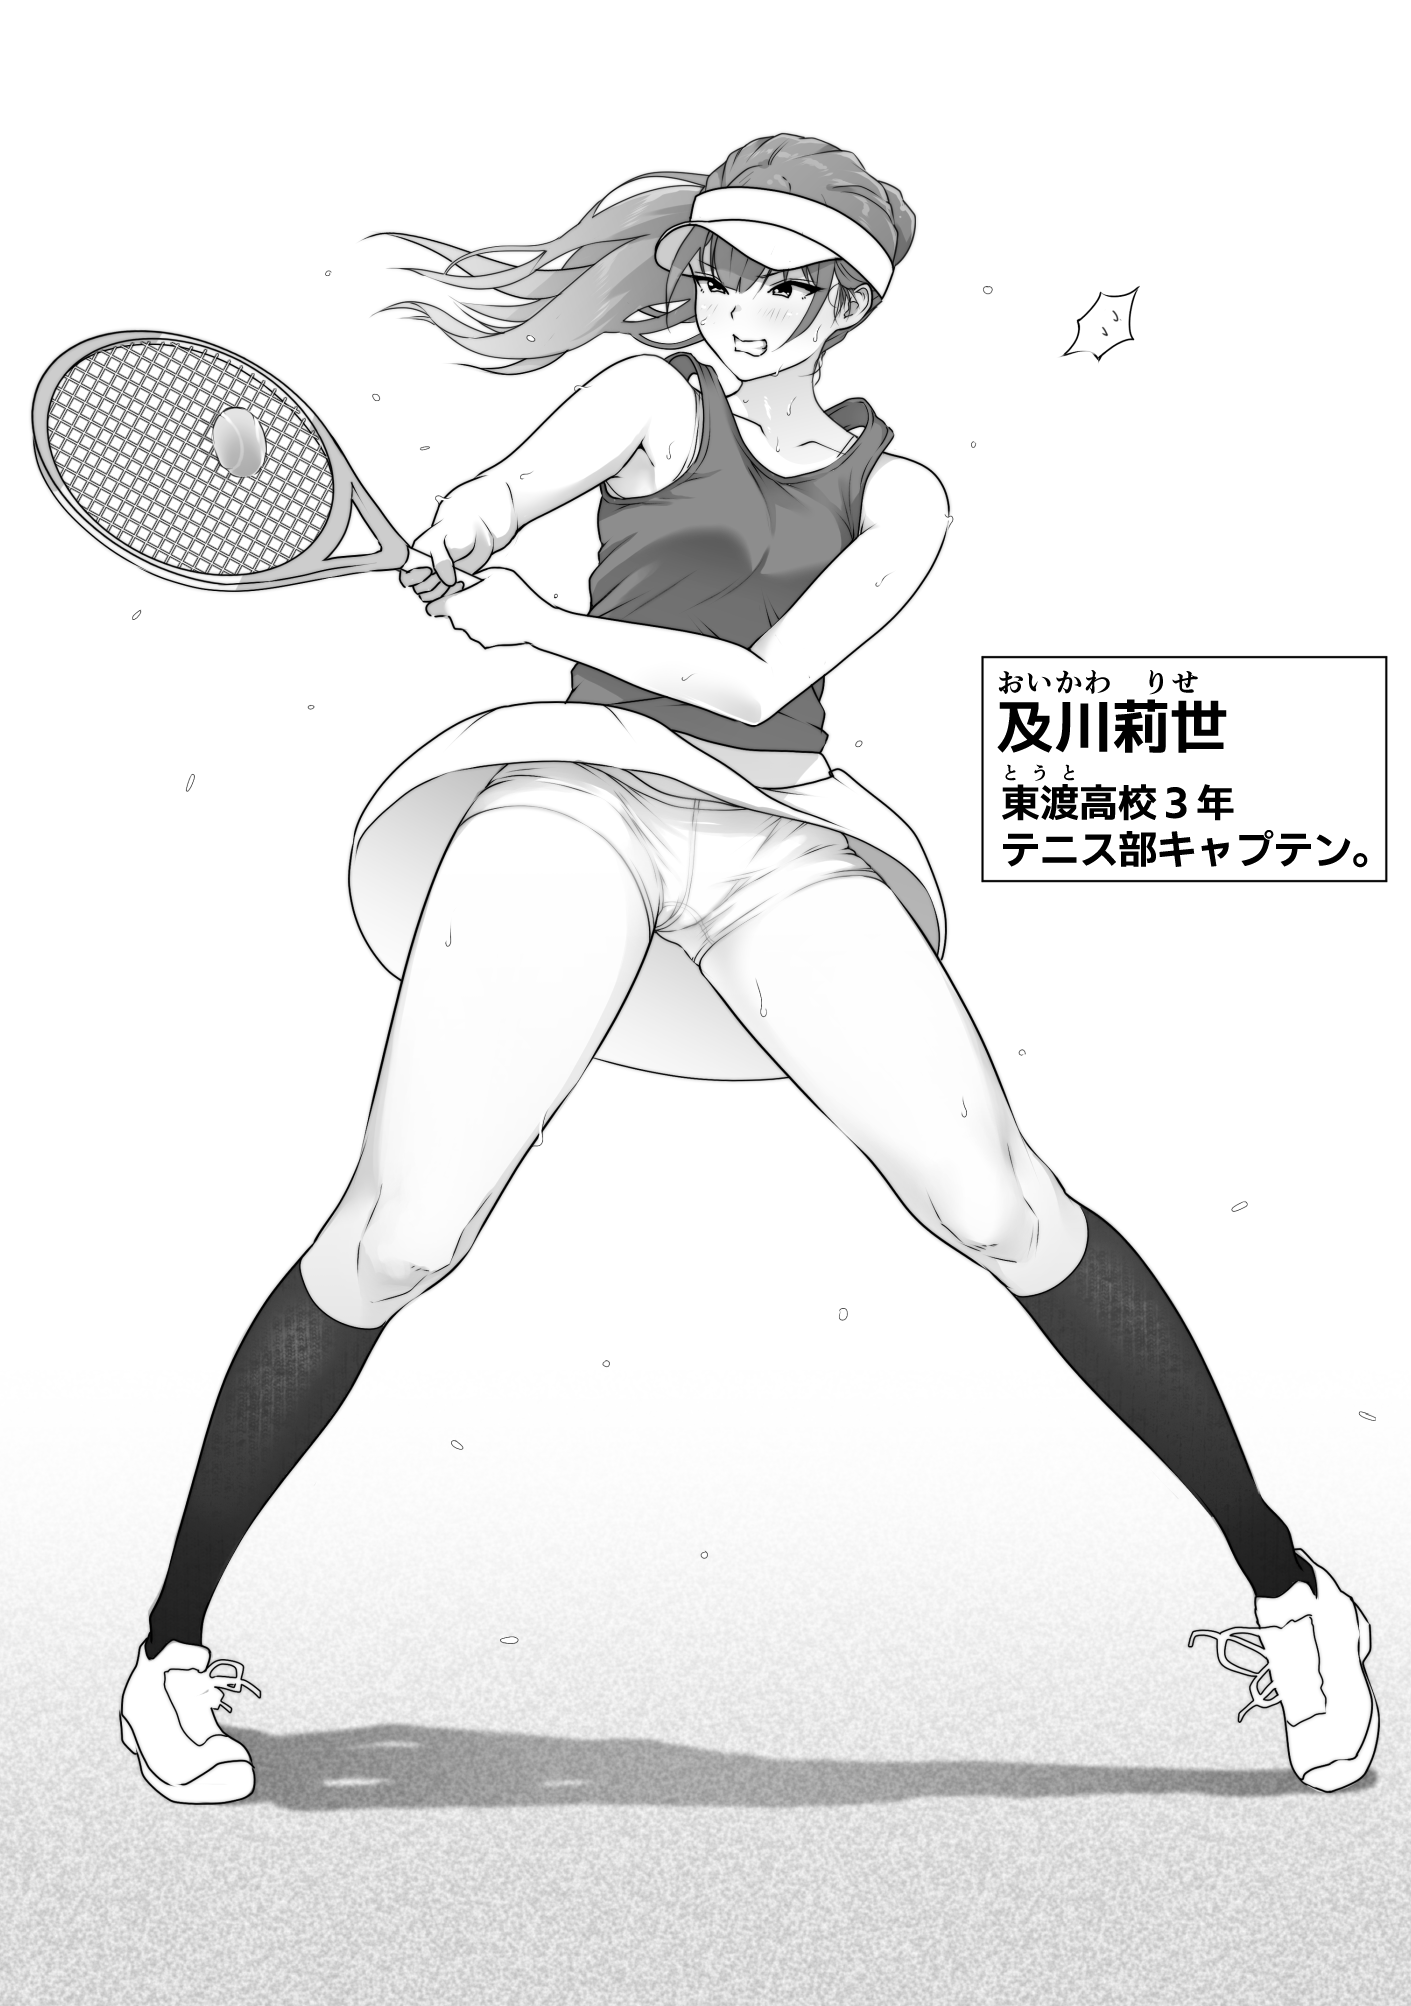 【エロ漫画無料大全集】【エロ漫画巨乳】テニス部の巨乳ちゃんがムラムラしまくってる野球部の男達の部屋に閉じ込められて…